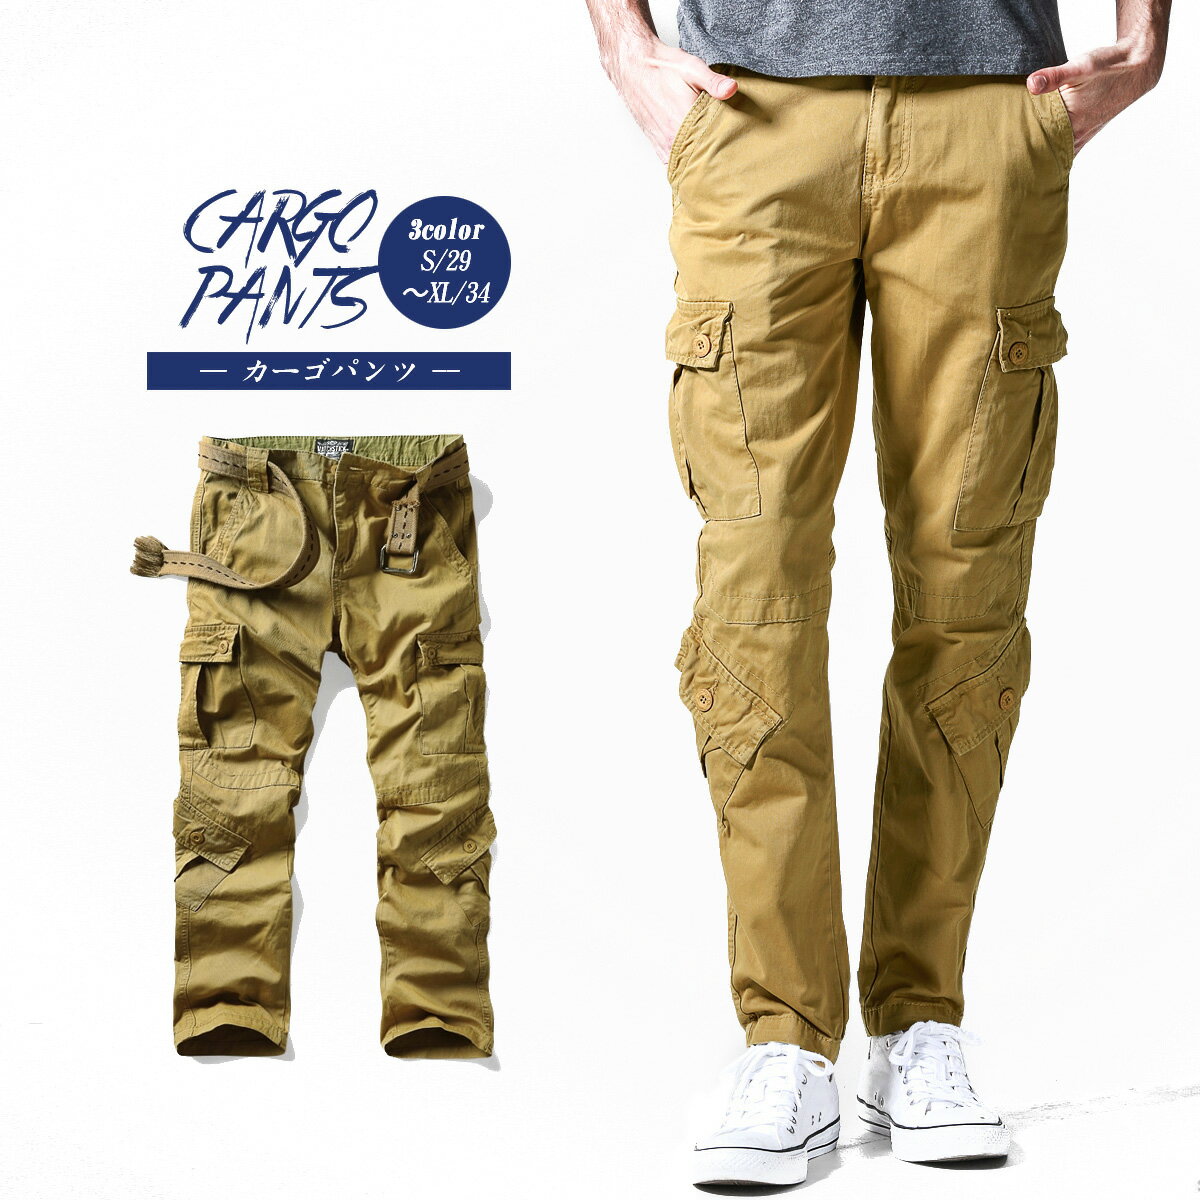 カーゴパンツ メンズ ズボン メンズ ポケット パンツ ゆったり パンツ 綿ミリタリーカーゴパンツ ワークパンツ Cargo Pants MENS